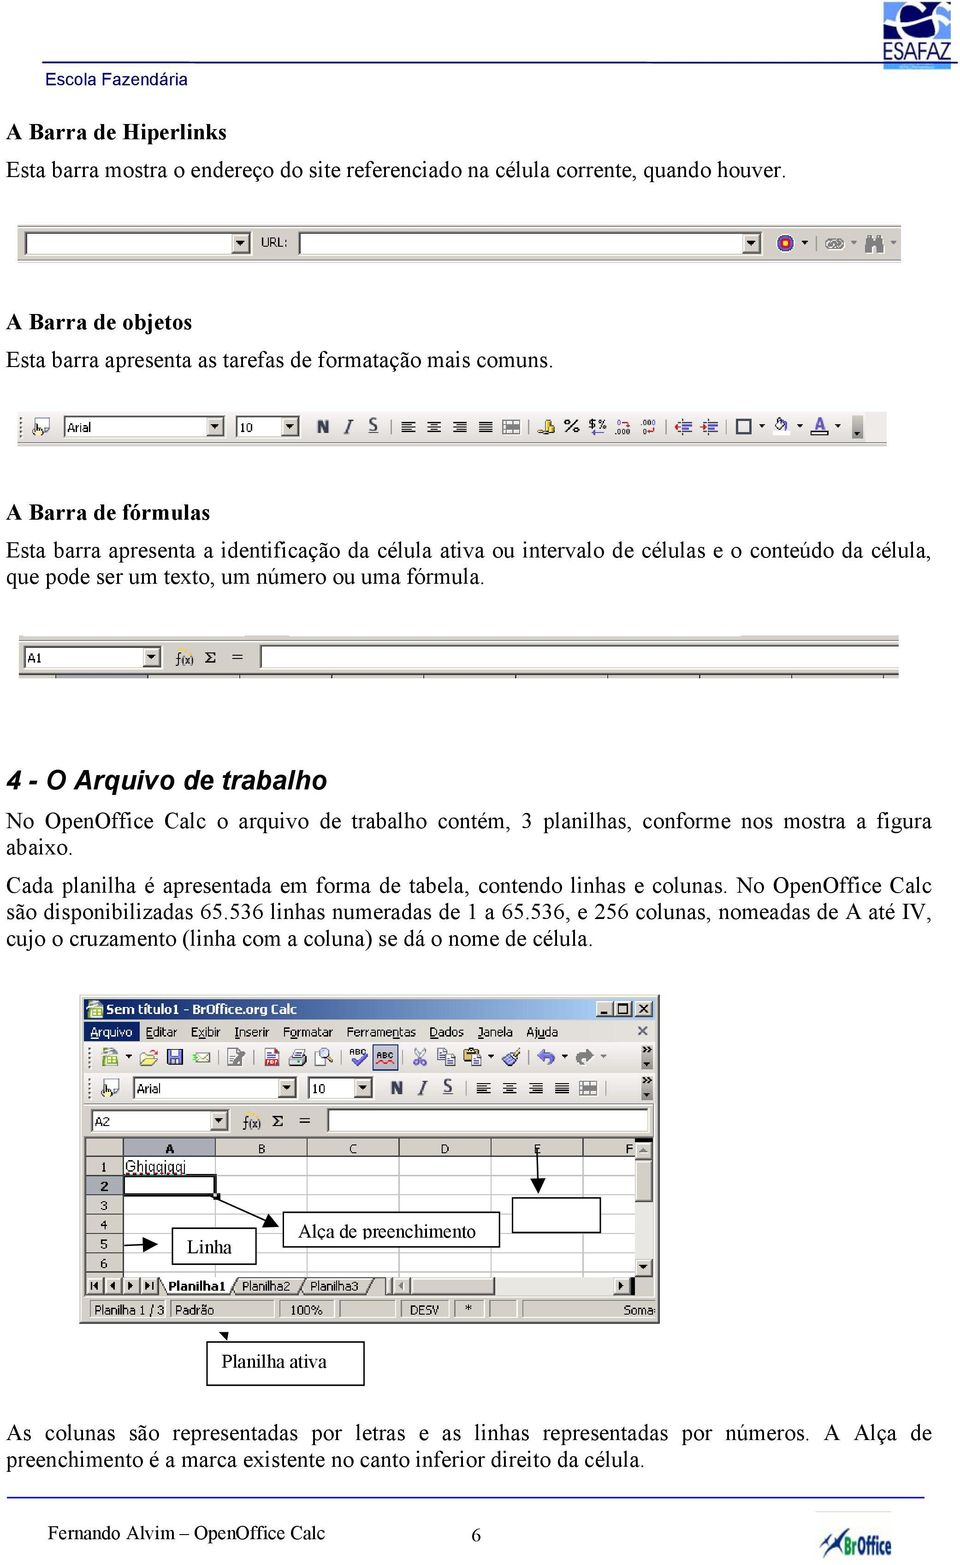 4 - O Arquivo de trabalho No OpenOffice Calc o arquivo de trabalho contém, 3 planilhas, conforme nos mostra a figura abaixo. Cada planilha é apresentada em forma de tabela, contendo linhas e colunas.